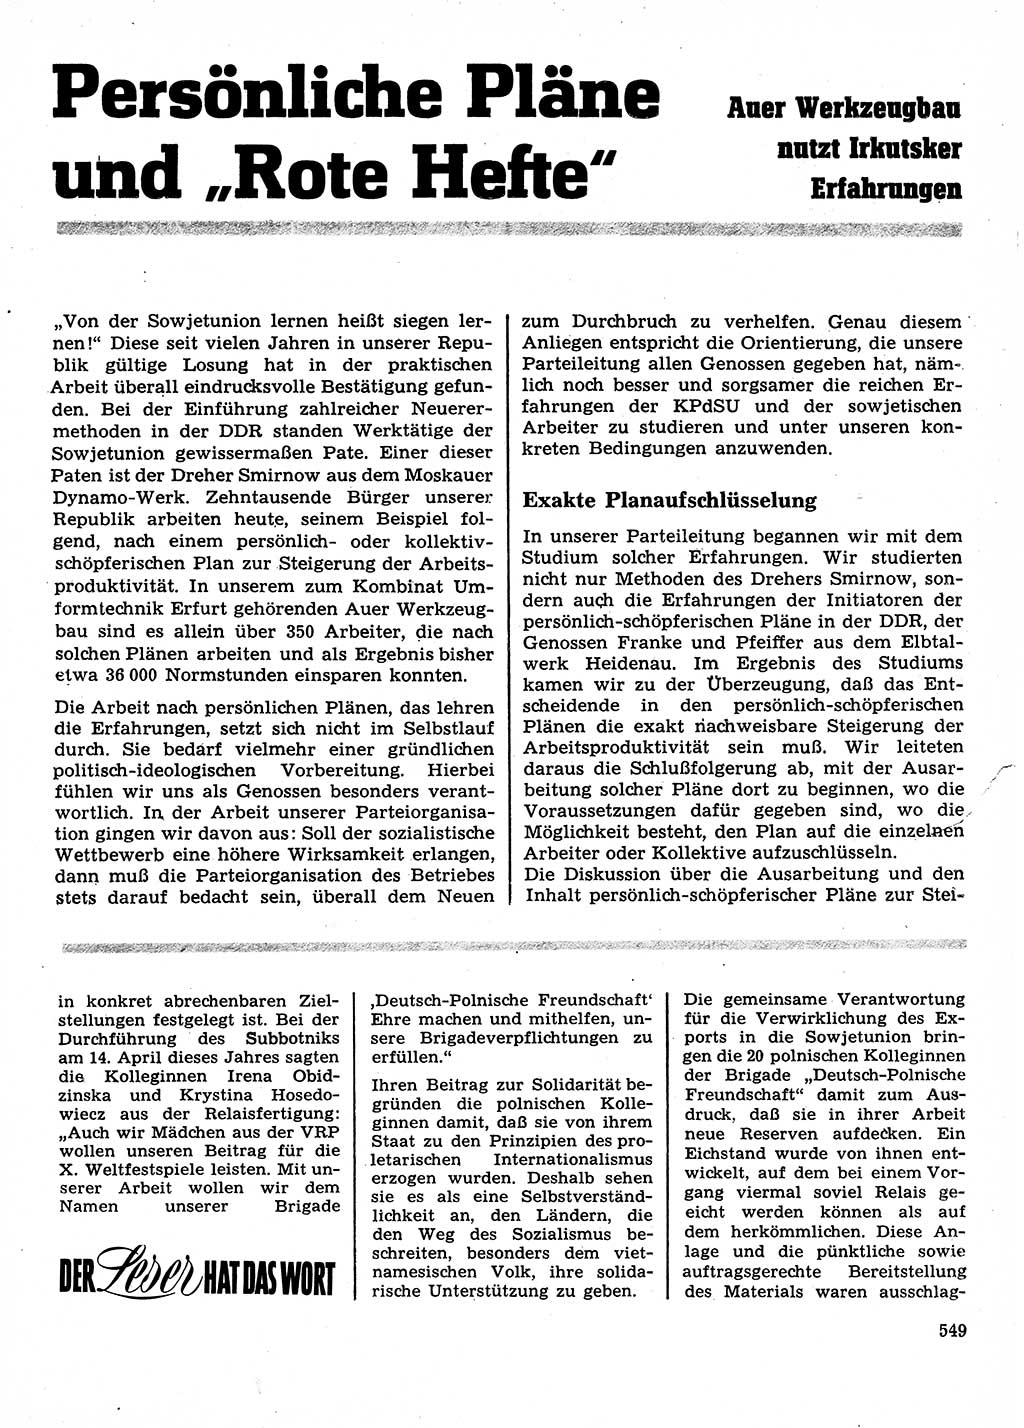 Neuer Weg (NW), Organ des Zentralkomitees (ZK) der SED (Sozialistische Einheitspartei Deutschlands) für Fragen des Parteilebens, 28. Jahrgang [Deutsche Demokratische Republik (DDR)] 1973, Seite 549 (NW ZK SED DDR 1973, S. 549)